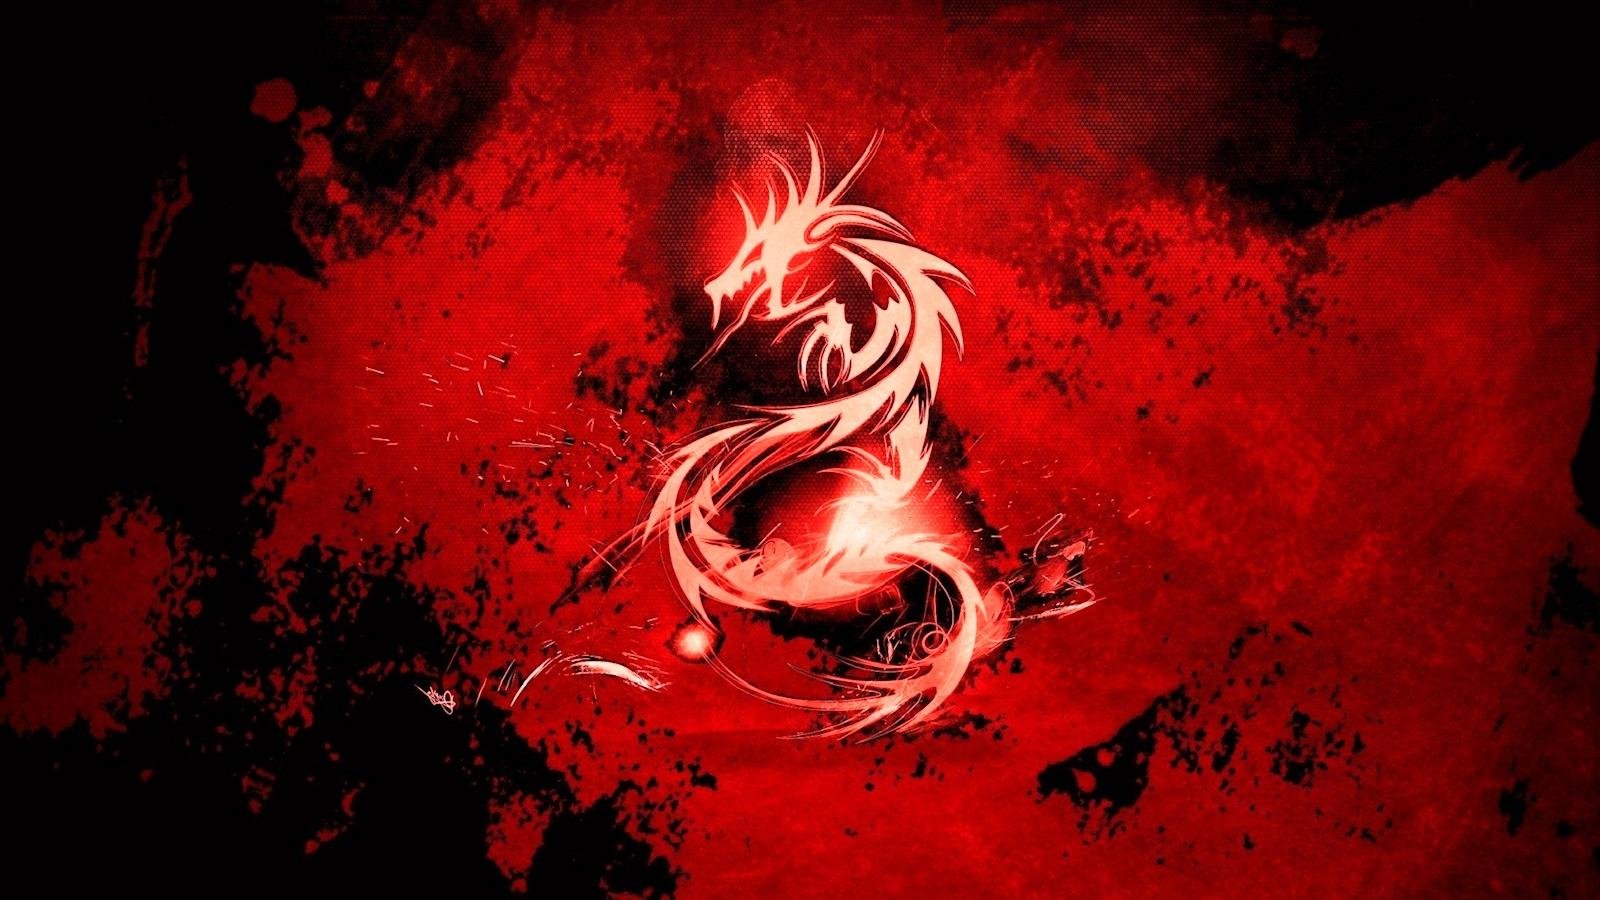 123 Red Dragon Wallpaper Hd 1080p Pics Myweb